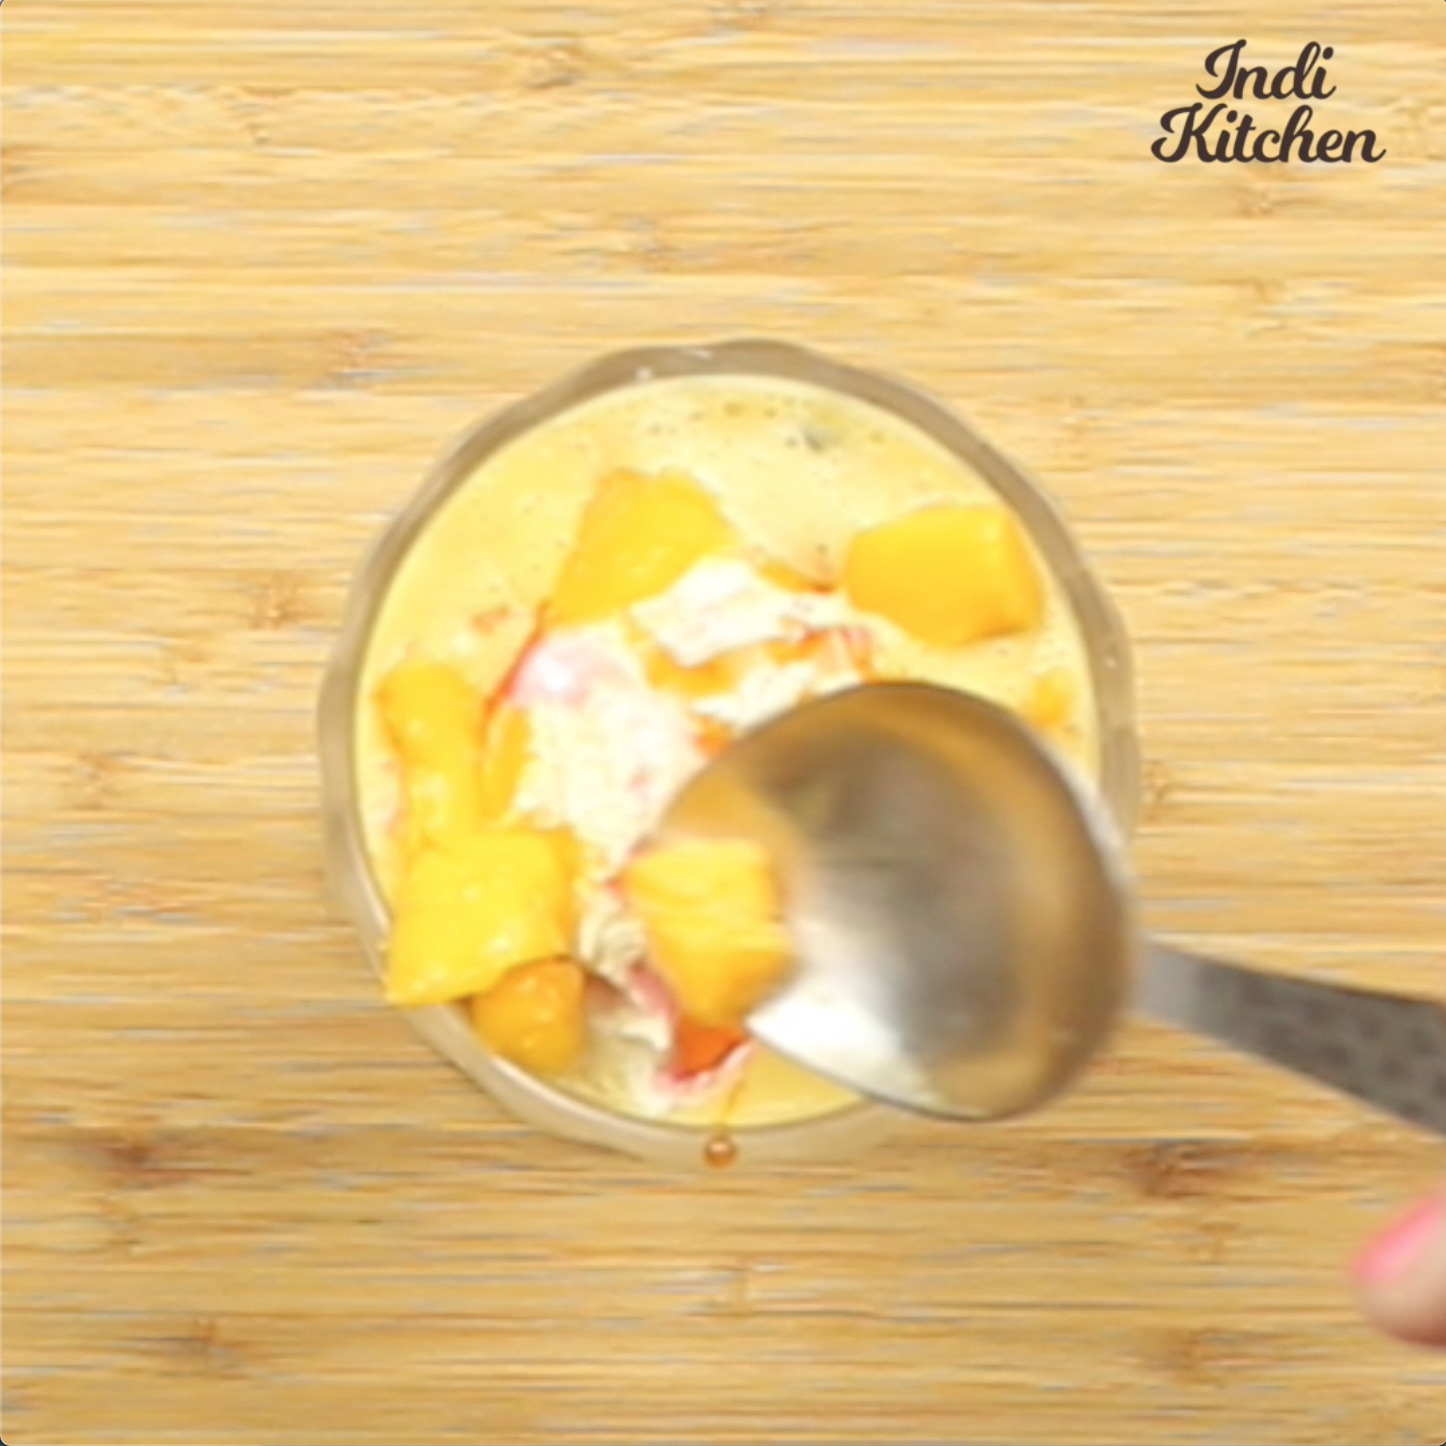 how to make thandai mango falooda 